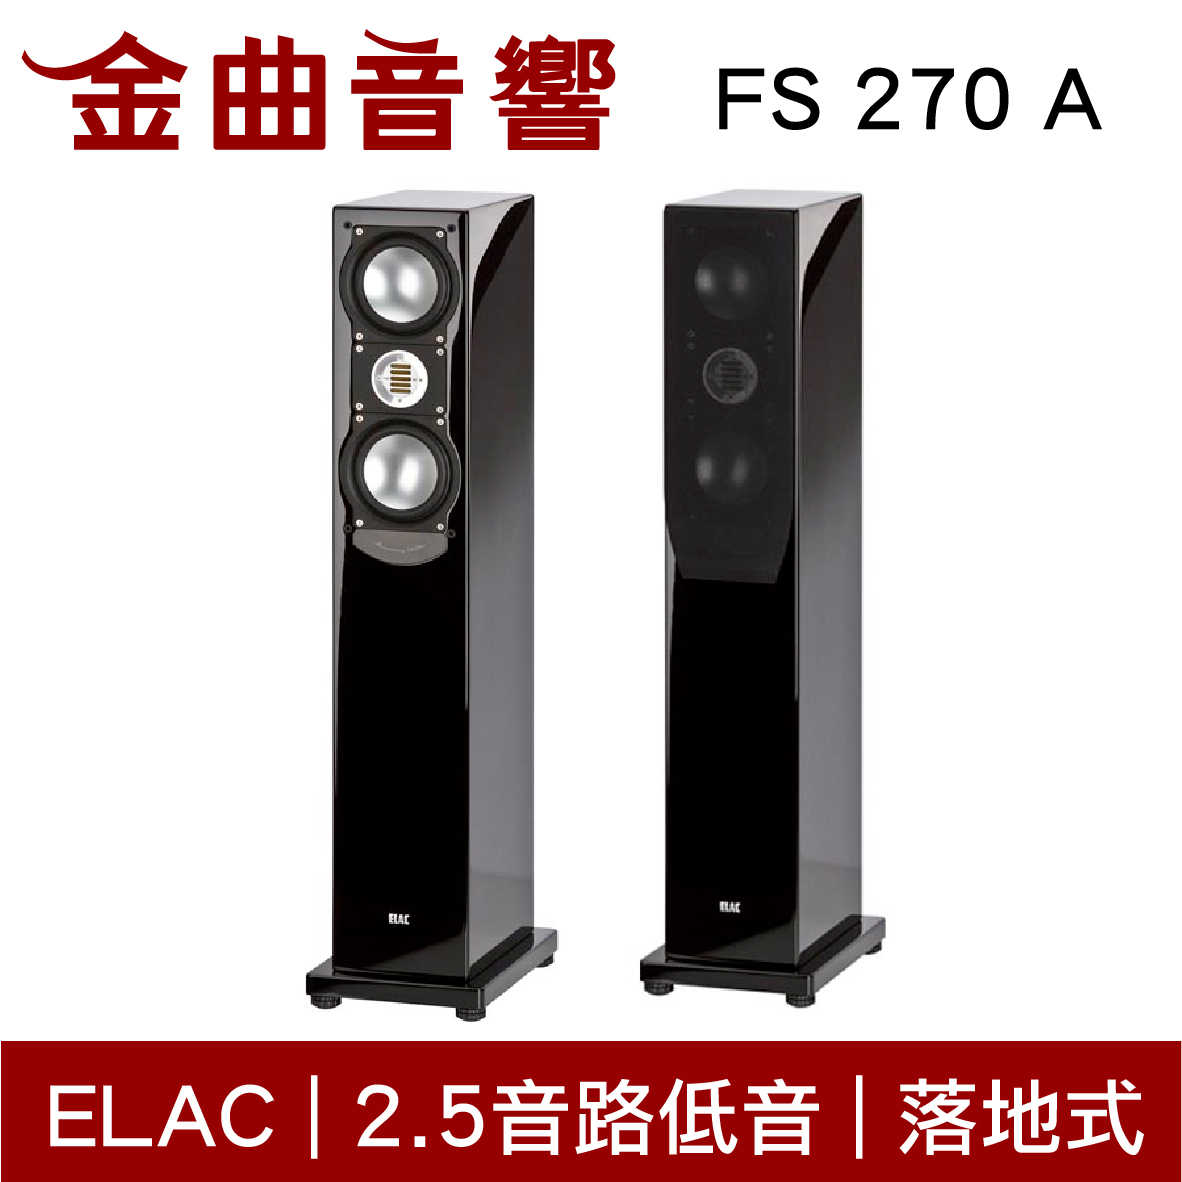 ELAC FS 207 A 落地型喇叭 2.5音路 低音反射式 揚聲器 音響（一對）| 金曲音響